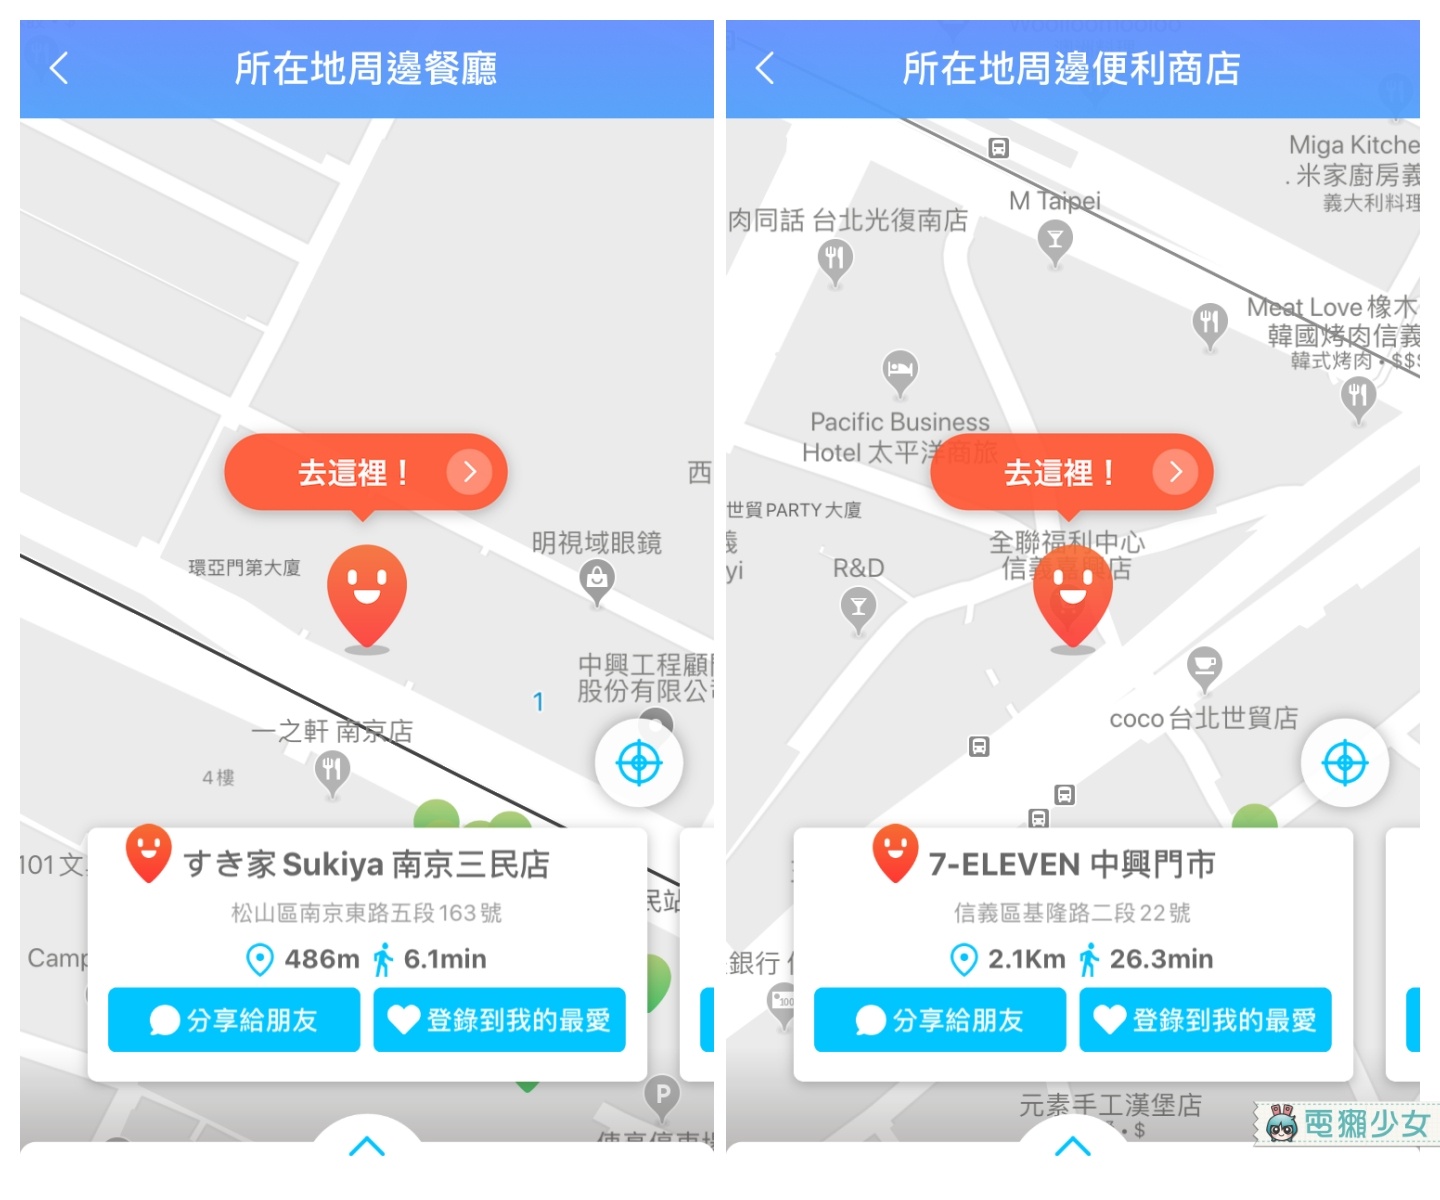 超強 AR 實景導航『 PinnAR 』！掃描路標圖片直接搜尋加翻譯！出國旅遊也不怕語言不通啦！Android / iOS